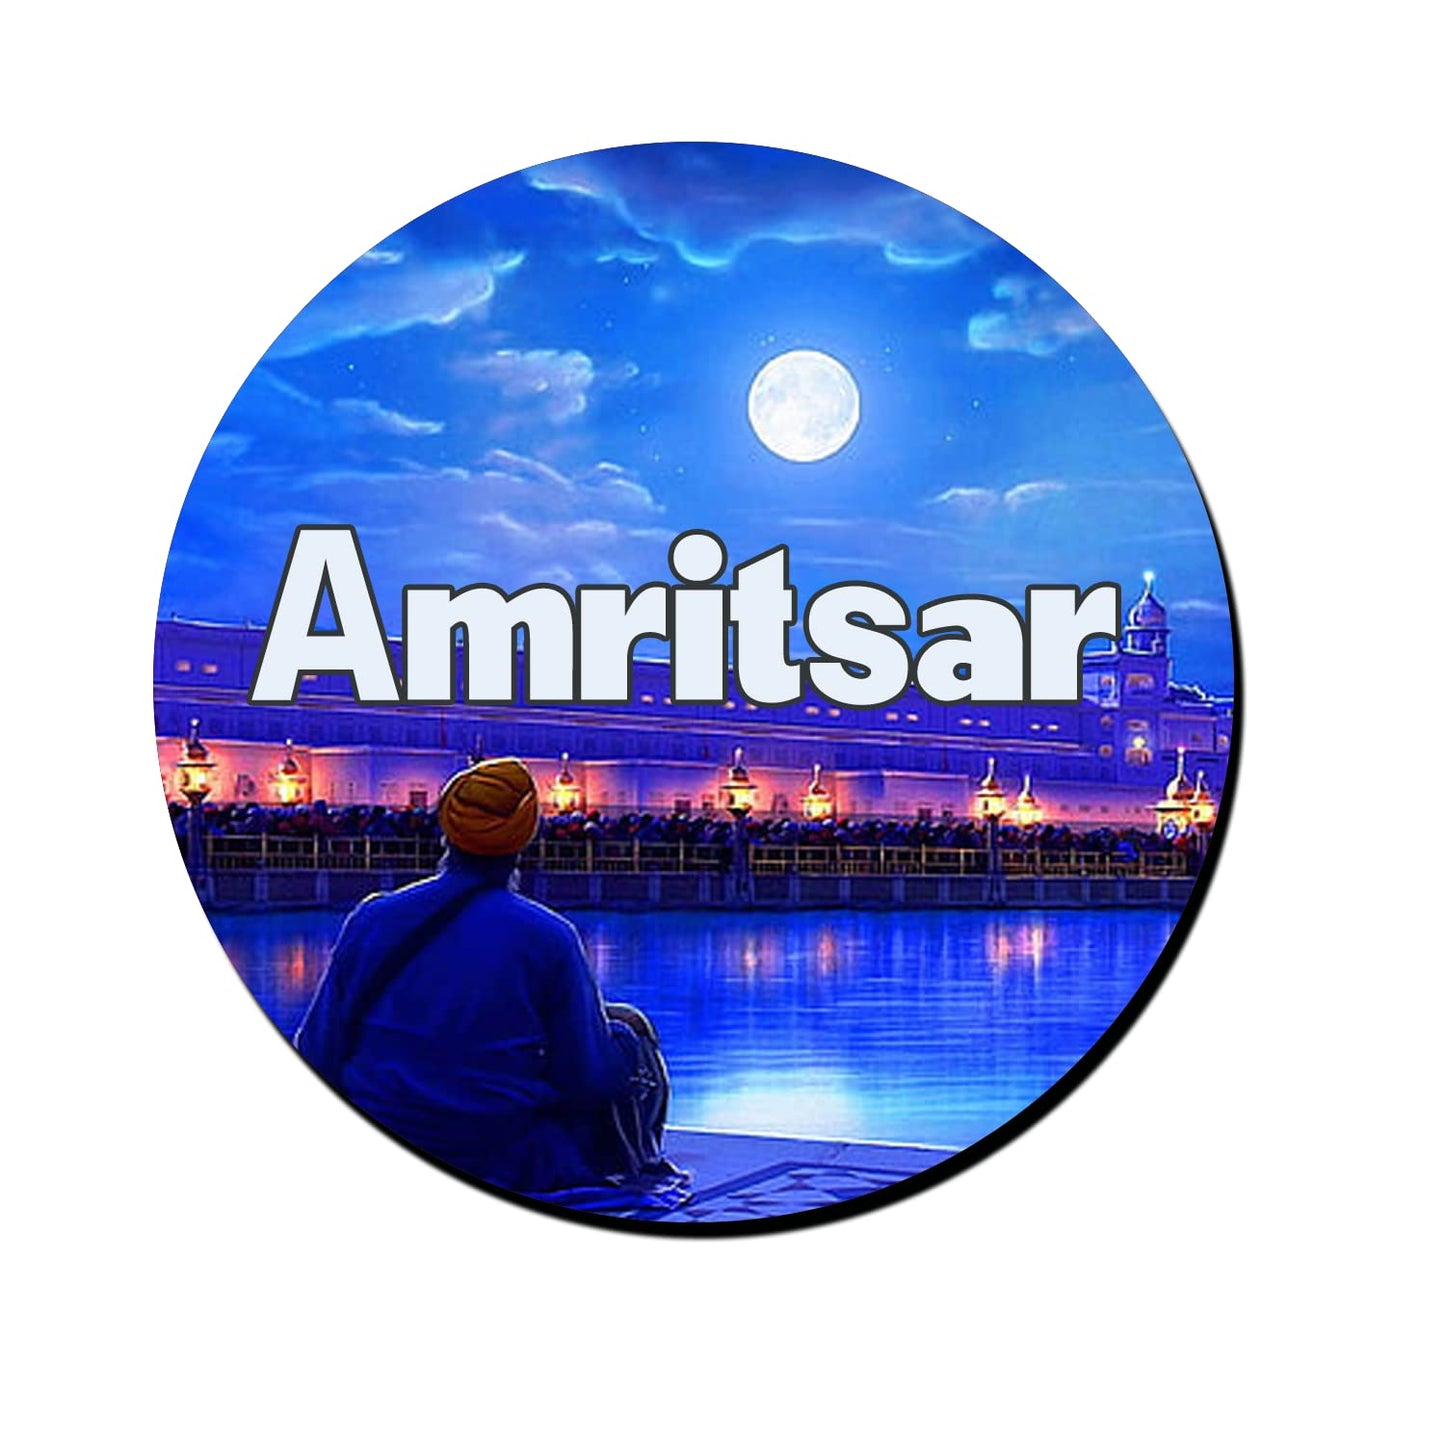 ShopTwiz Amritsar City Decorative Large Fridge Magnet